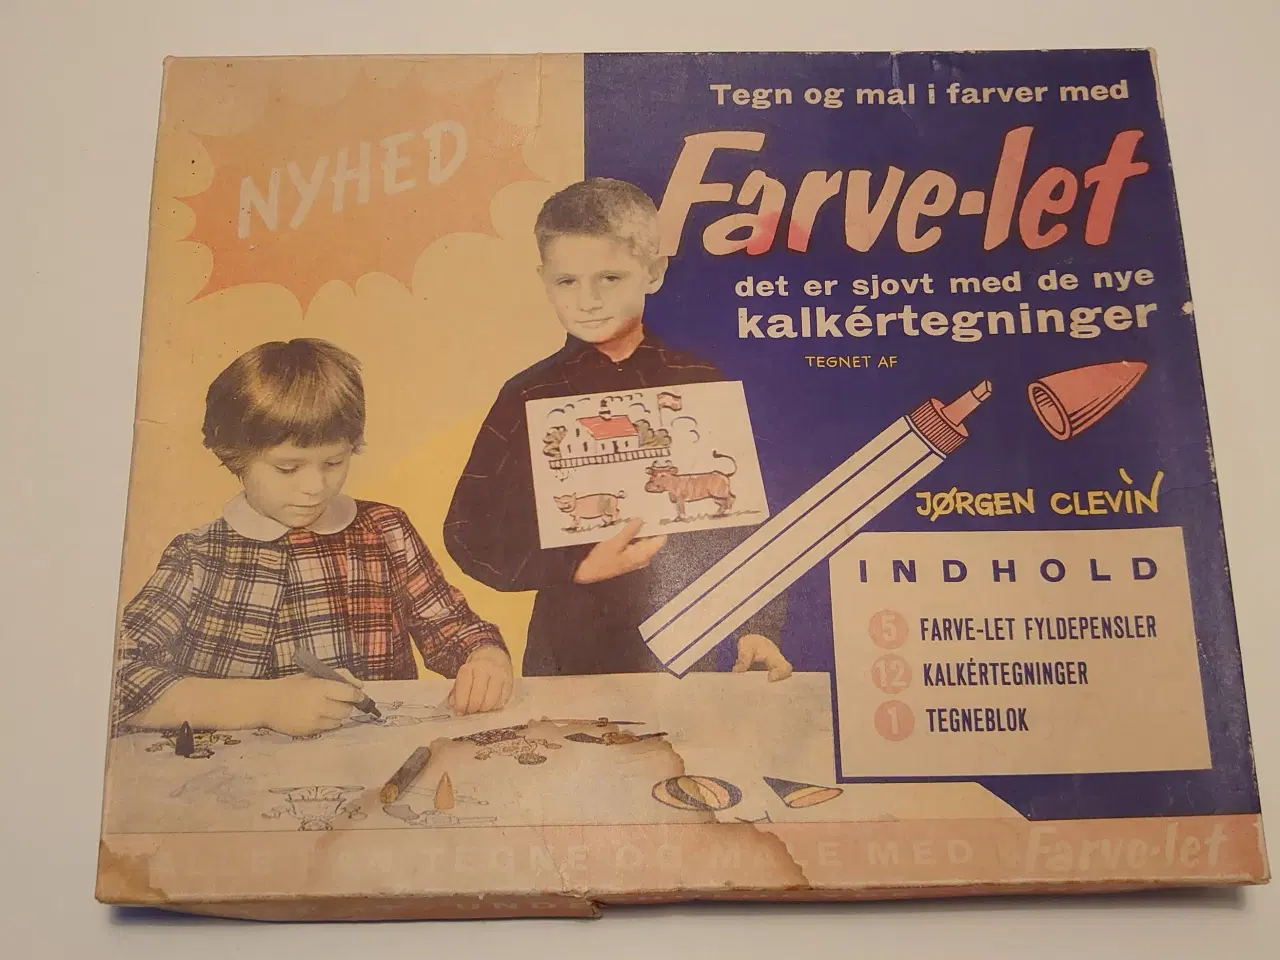 Billede 1 - Jørgen Clevin:Farve-let, et vintage tegne/lære sæt